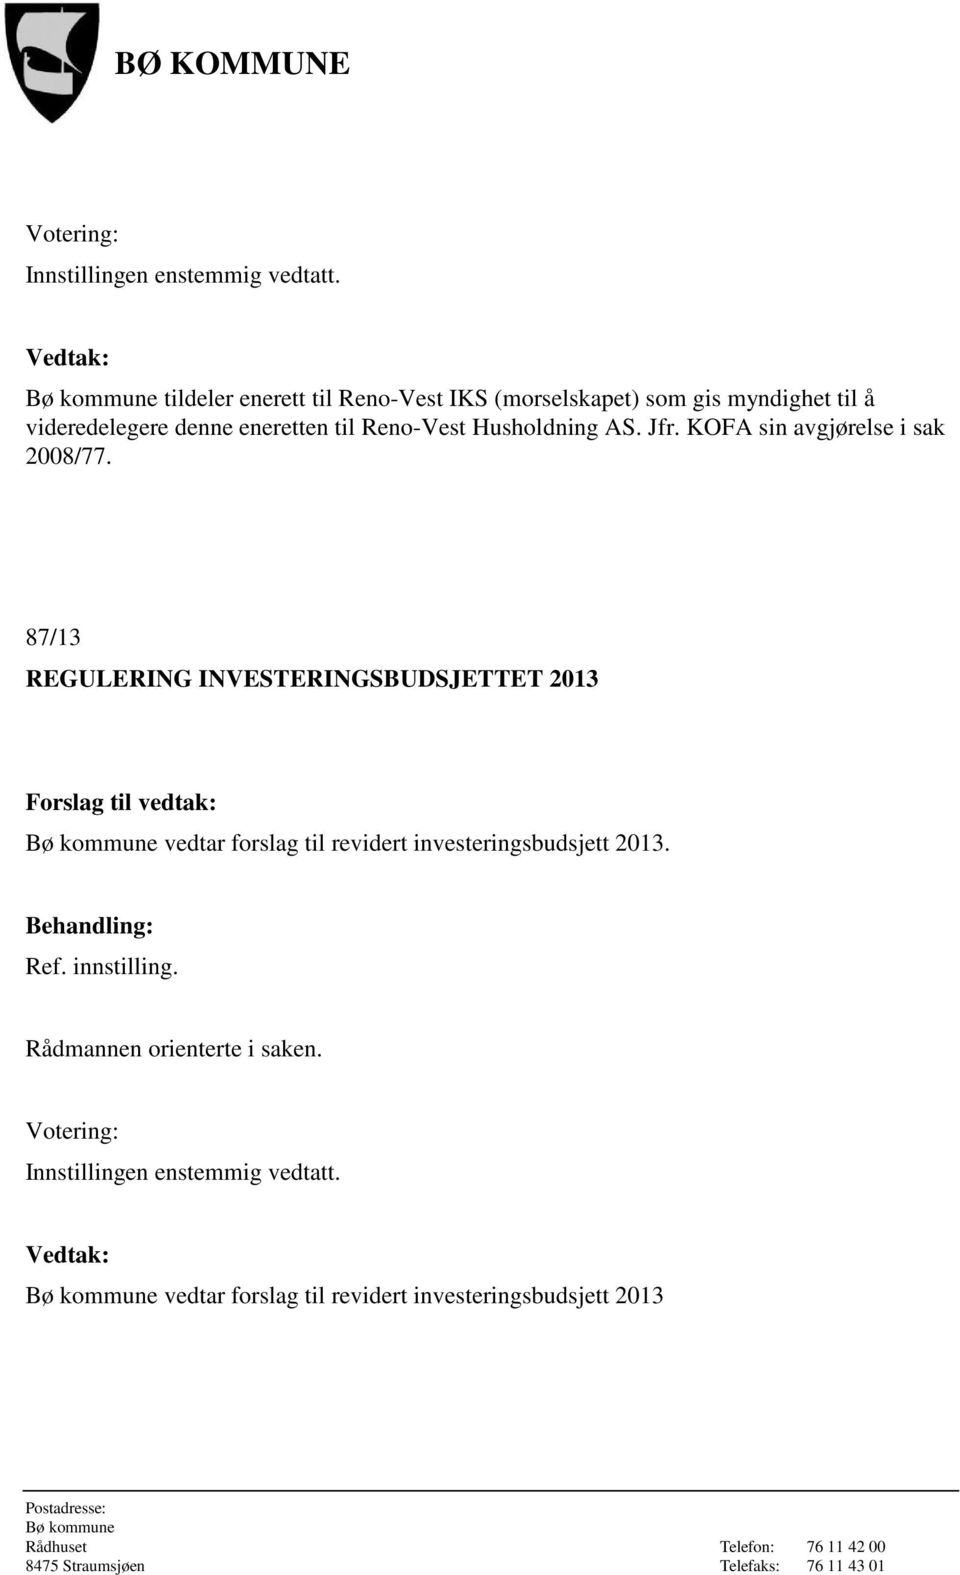 87/13 REGULERING INVESTERINGSBUDSJETTET 2013 vedtar forslag til revidert